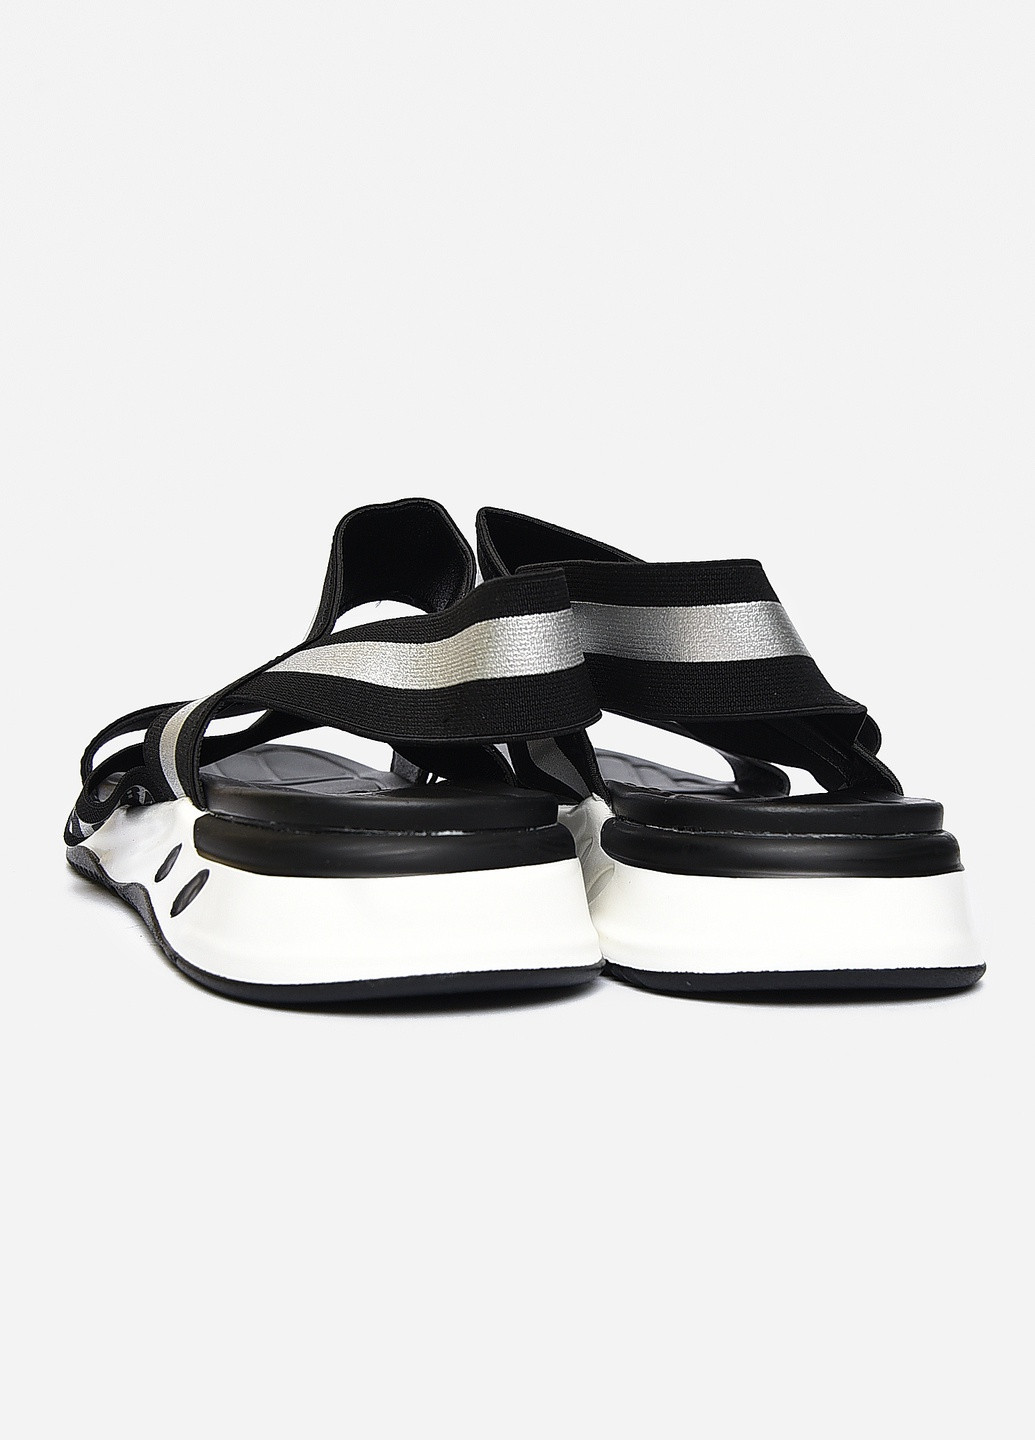 Пляжные сандалии мужские чорно-серого цвета текстиль Let's Shop